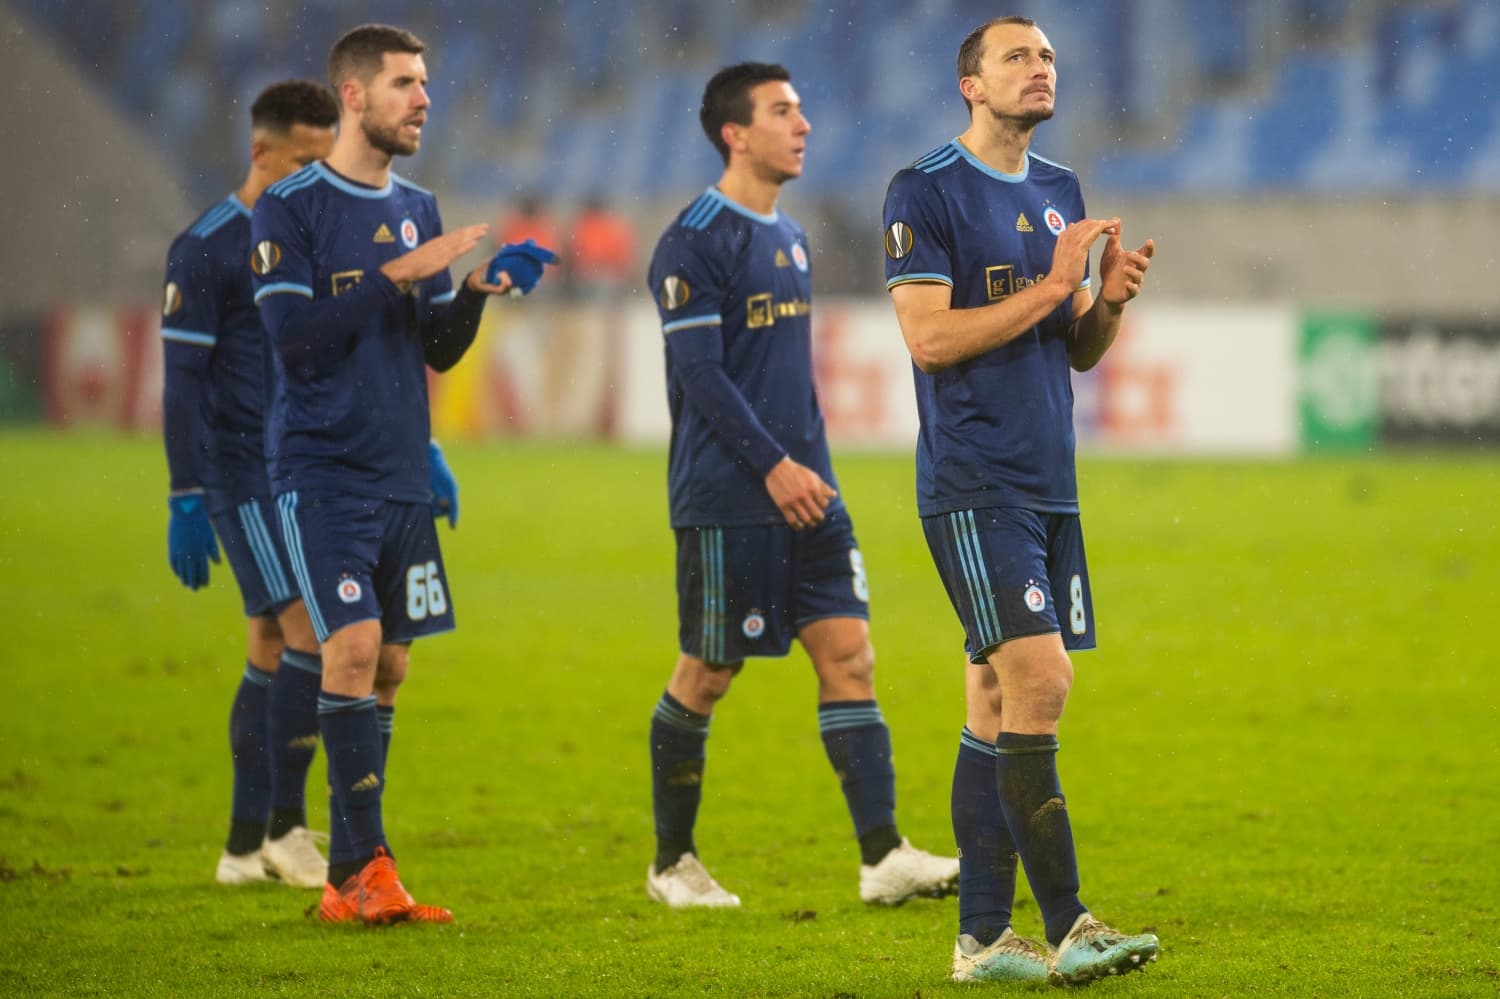 Bajnokok Ligája: kérdéses, hogy a Slovant szerdán pályára engedik-e, a koronavírus beleszólhat mindenbe